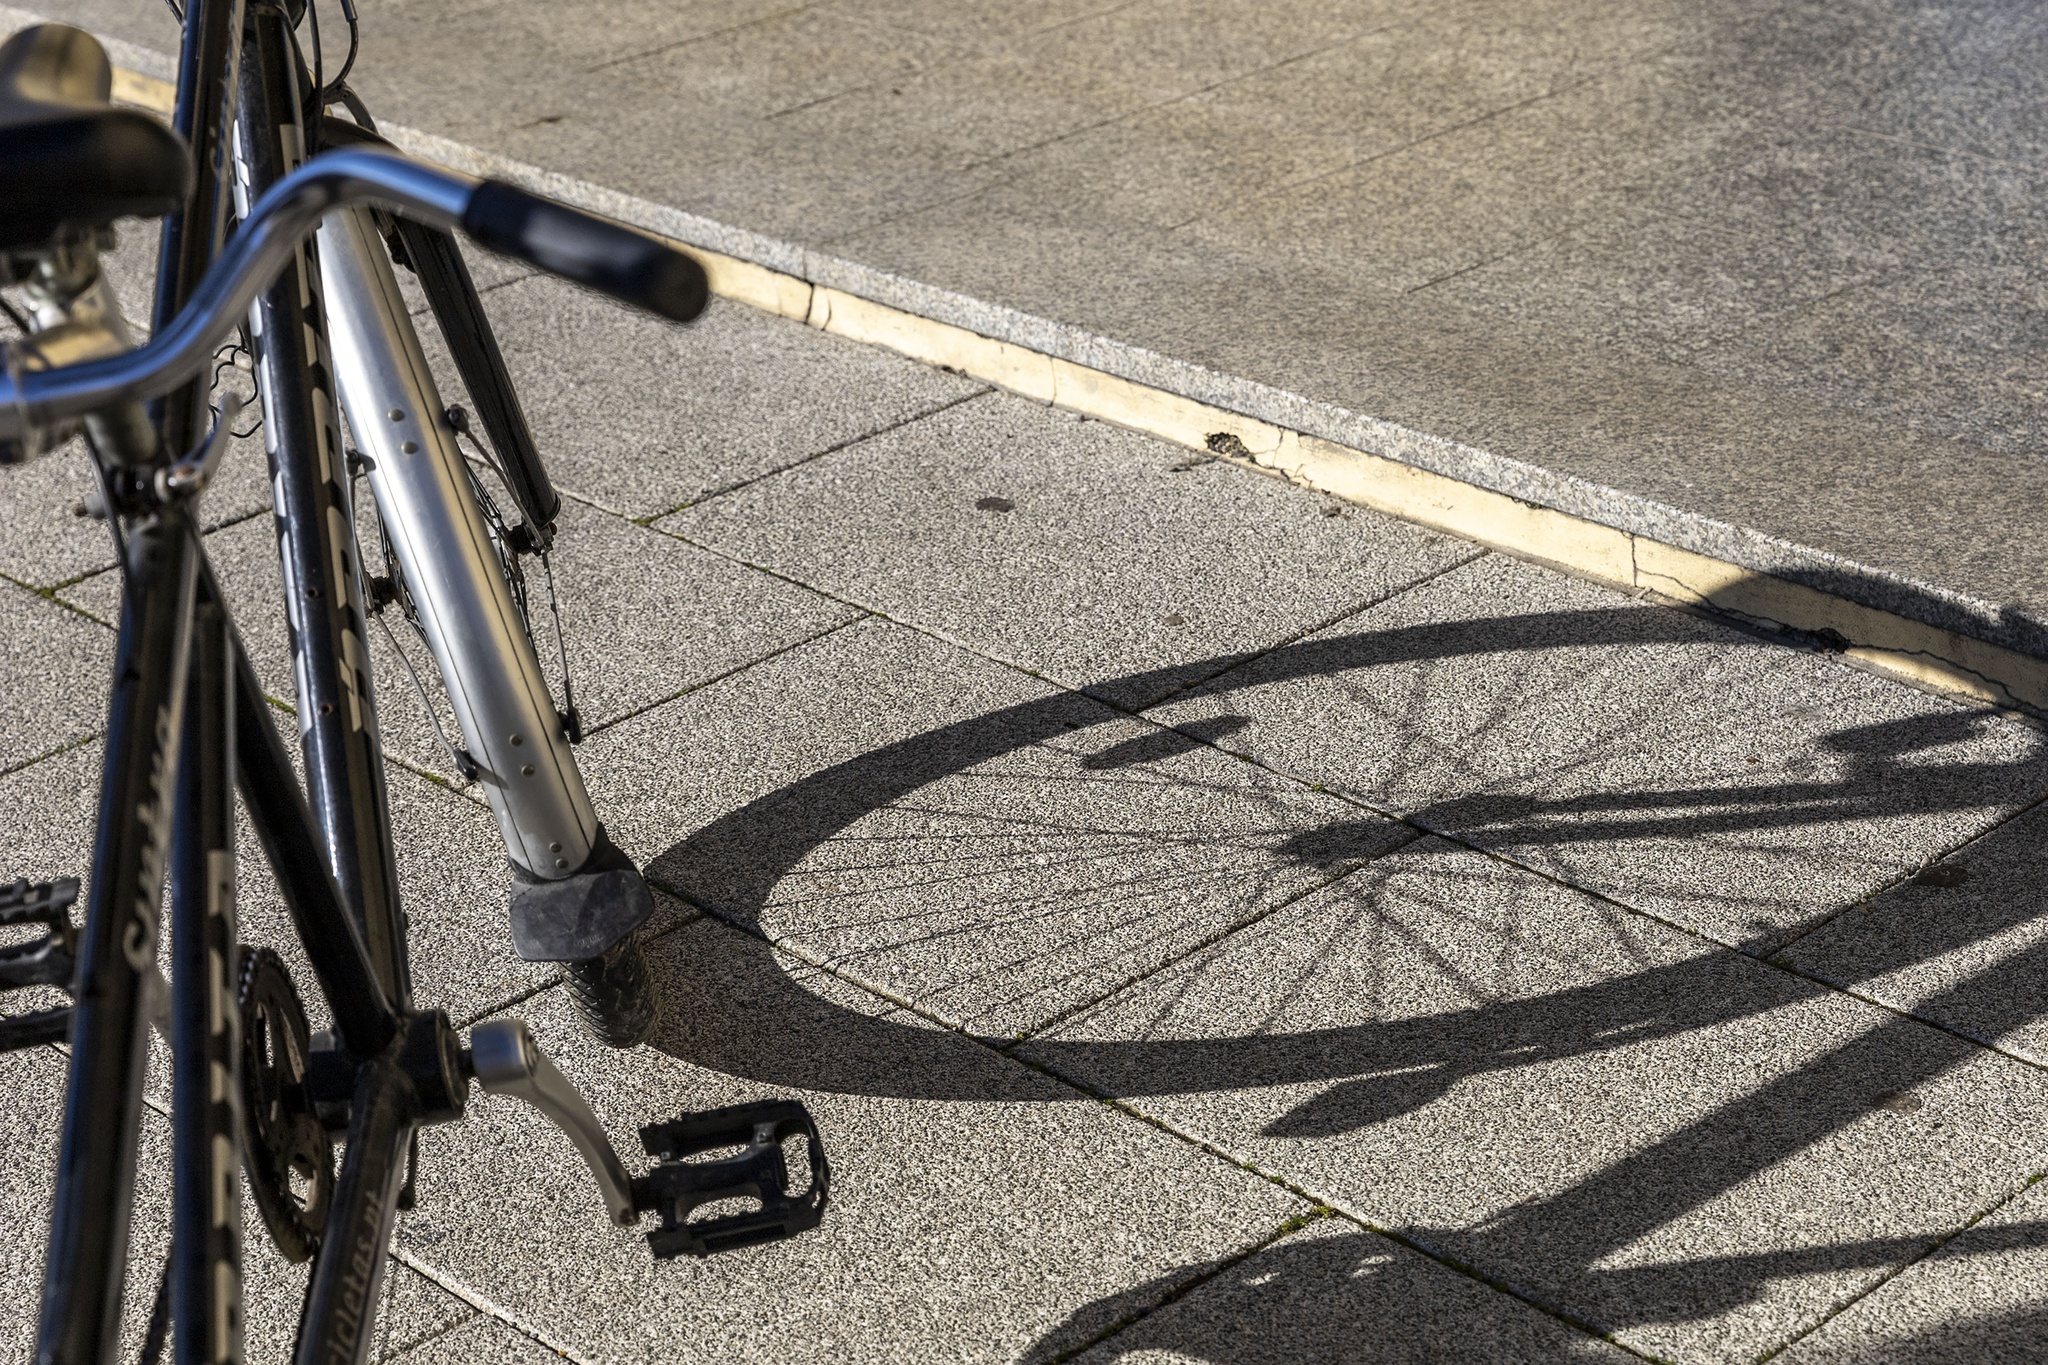 Ladrões de Bicicletas: Por um lado e por outro